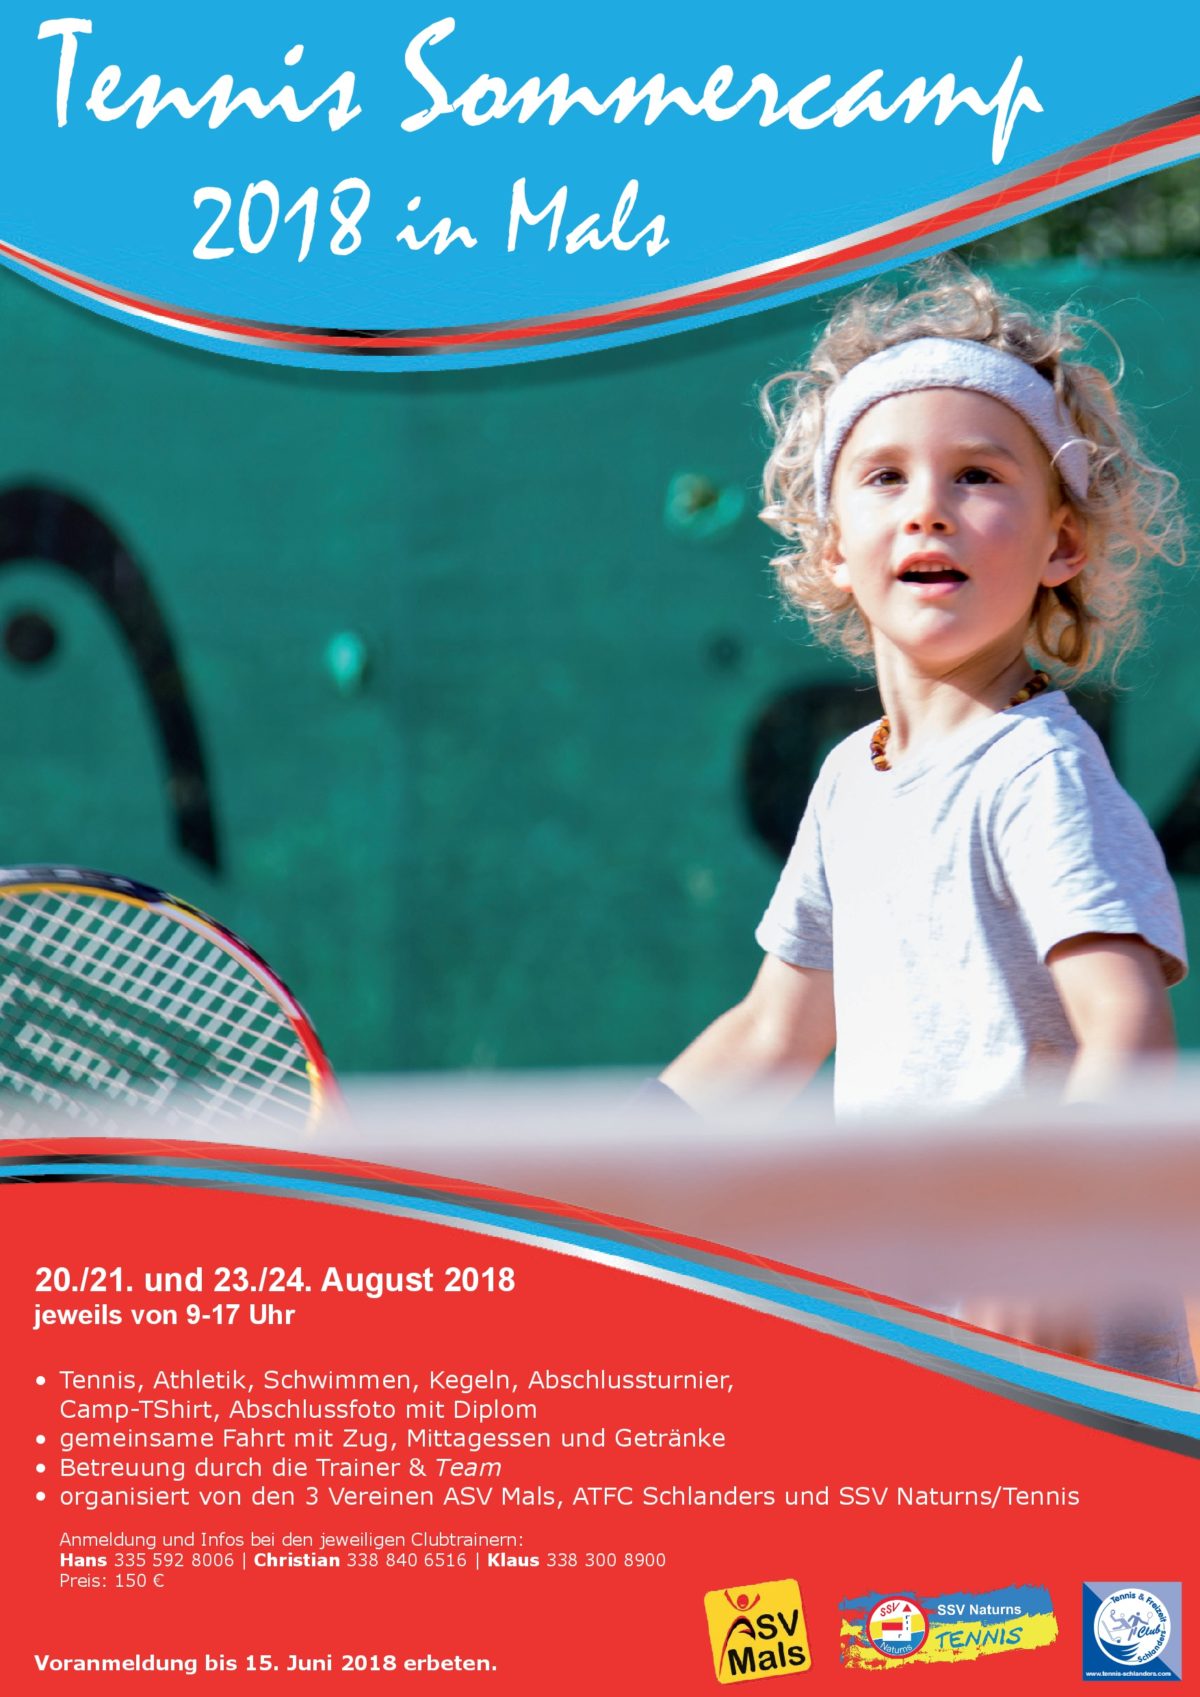 07 Flyer Tennis Sommerecamp 2018 in Mals